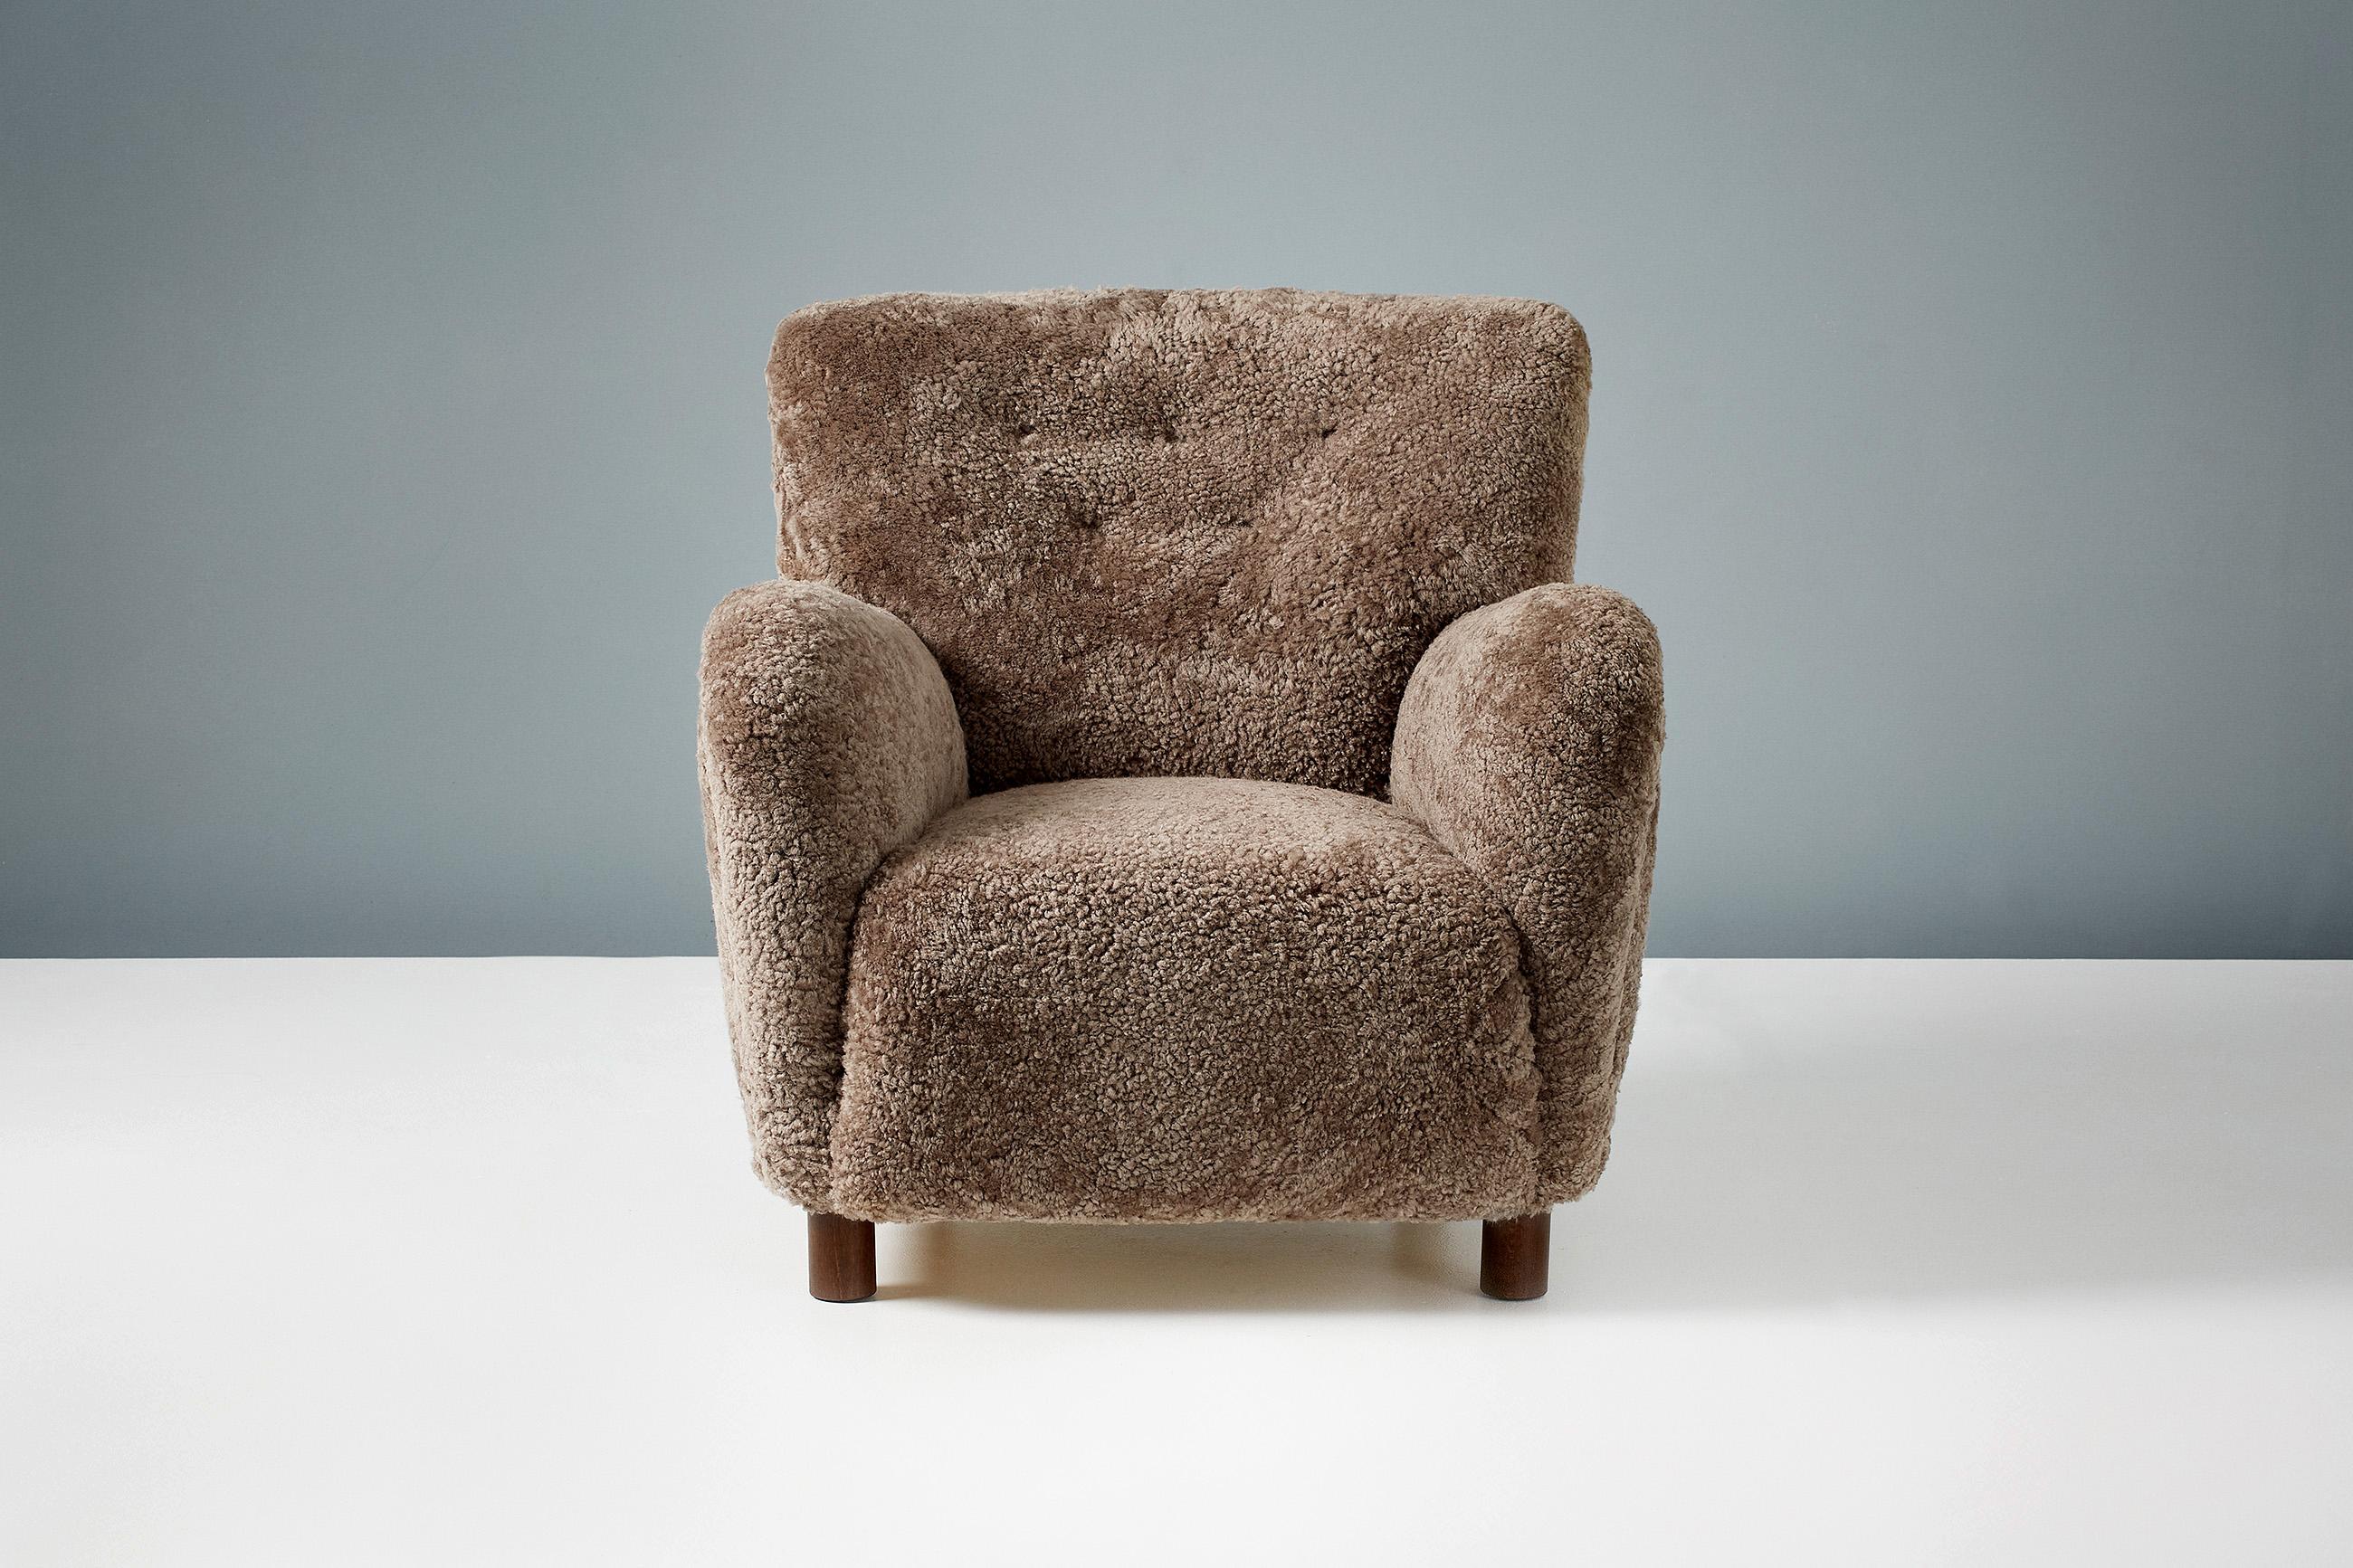 Dagmar Design/One - Chaise longue modèle 54.

Le modèle 54 fait partie de notre gamme de meubles rembourrés sur mesure. Cette pièce a été développée et fabriquée à la main dans nos ateliers de Londres en utilisant des matériaux de la plus haute